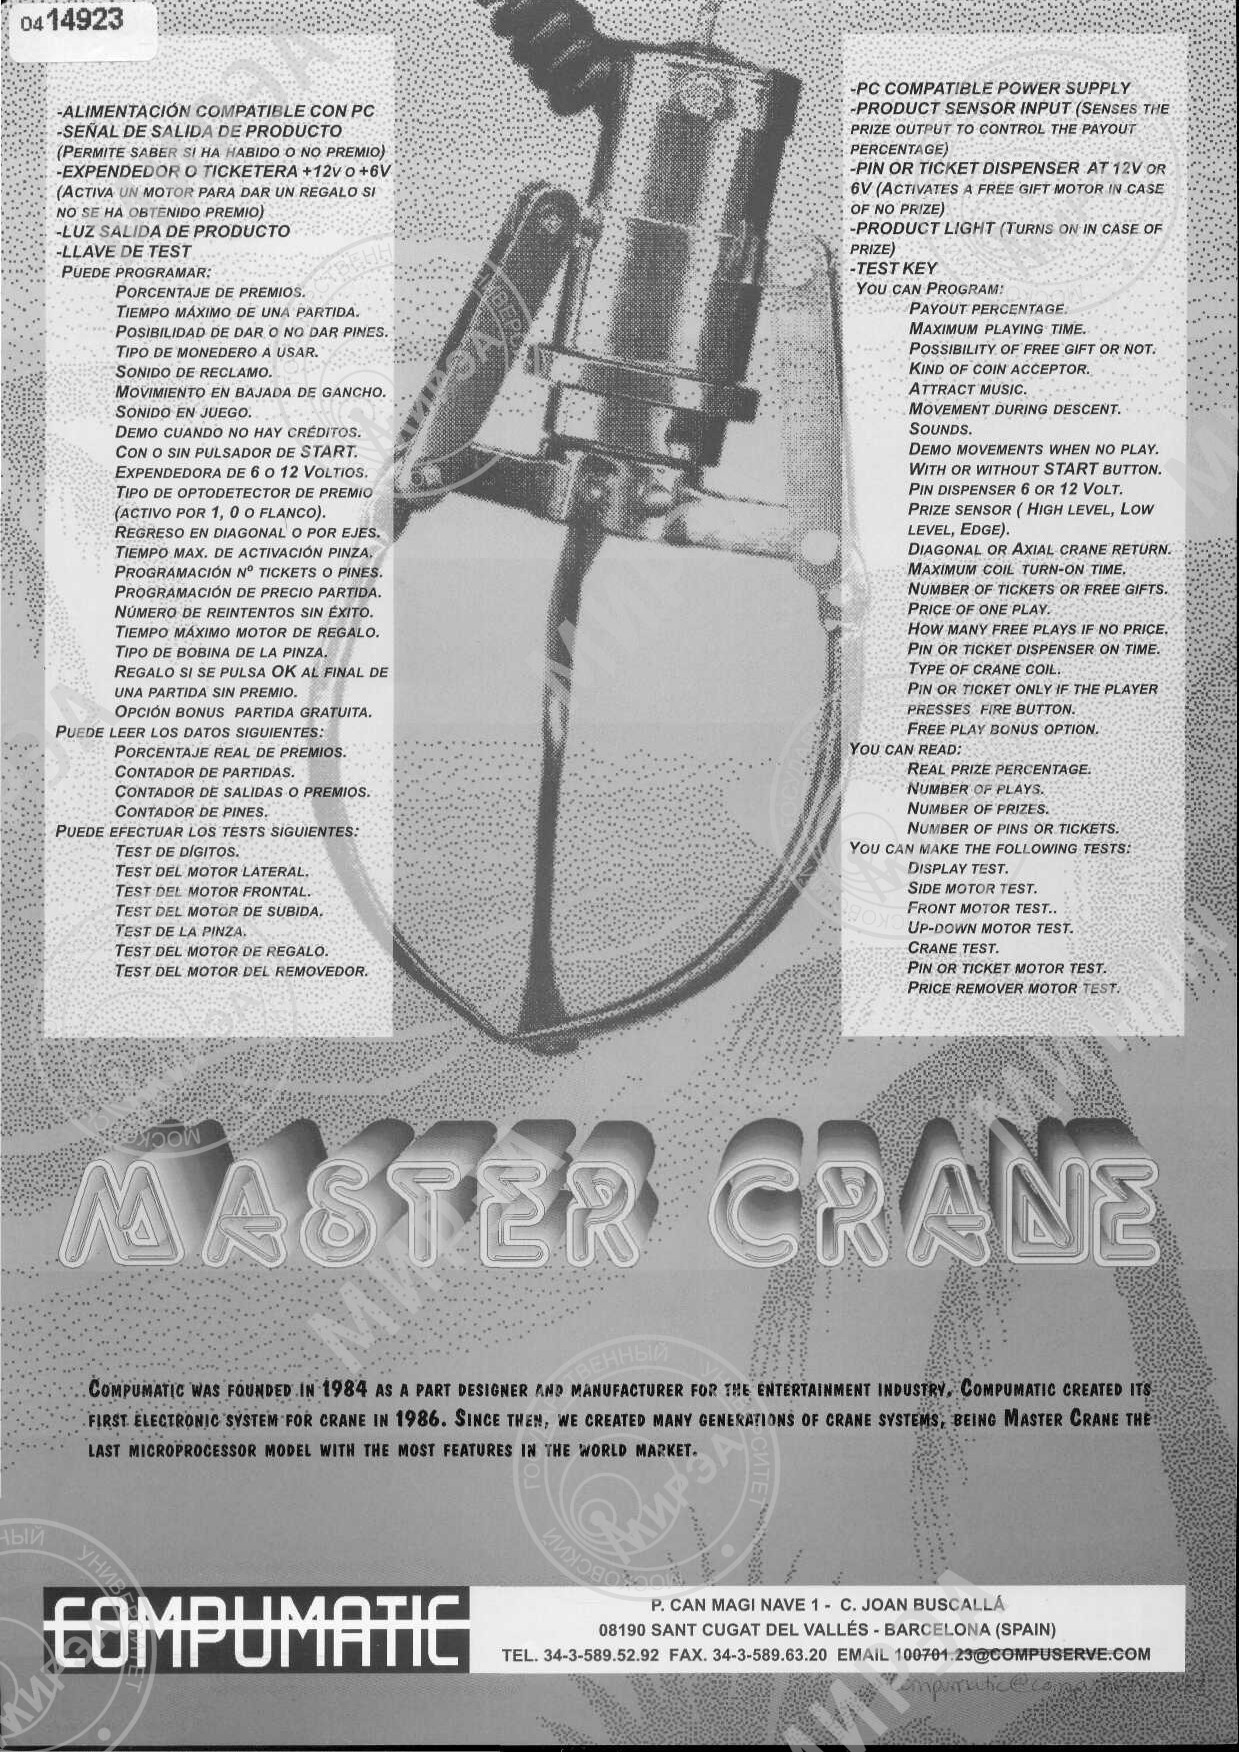 Master Crane es una placa diseñada por Compumatic para máquinas de tipo grúa.